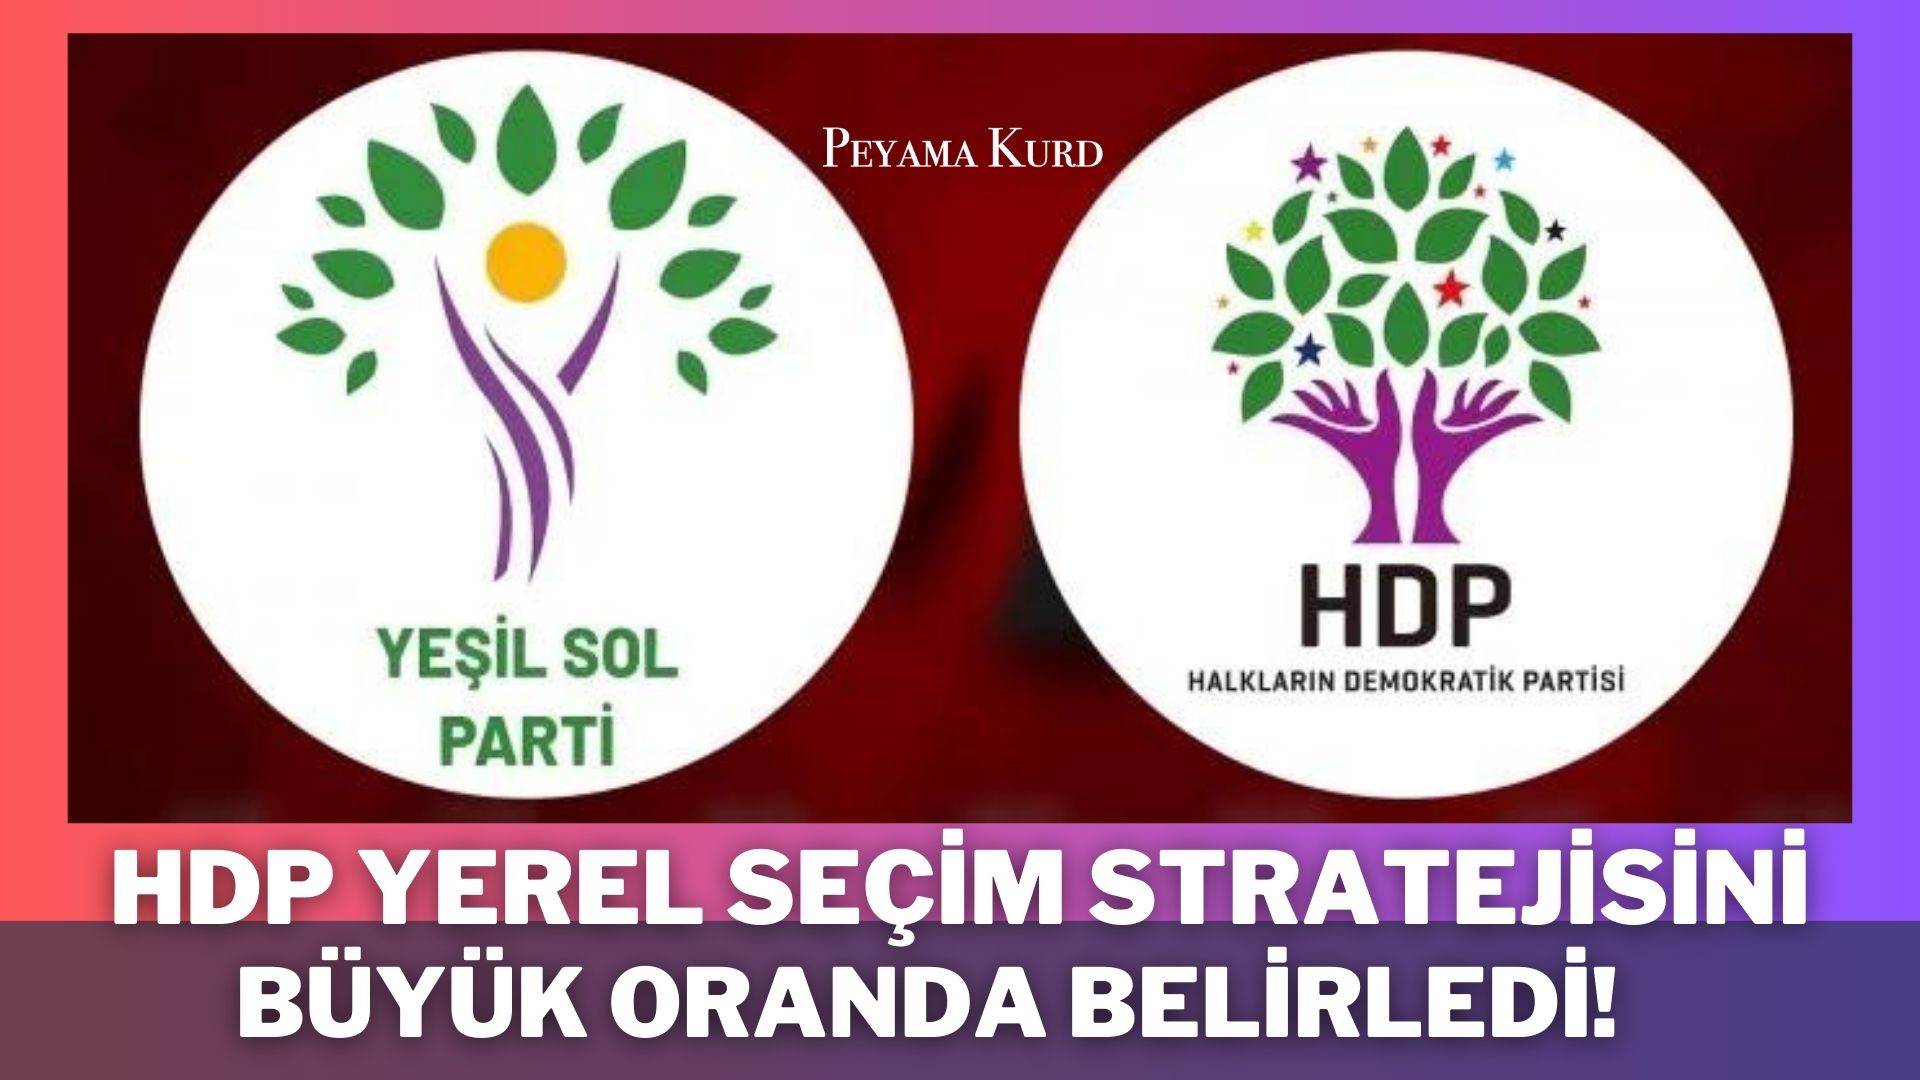 SÖYLEŞİ | HDP, 'O partiler' ile görüşmeme kararı aldı! Etkileri neler olacak?